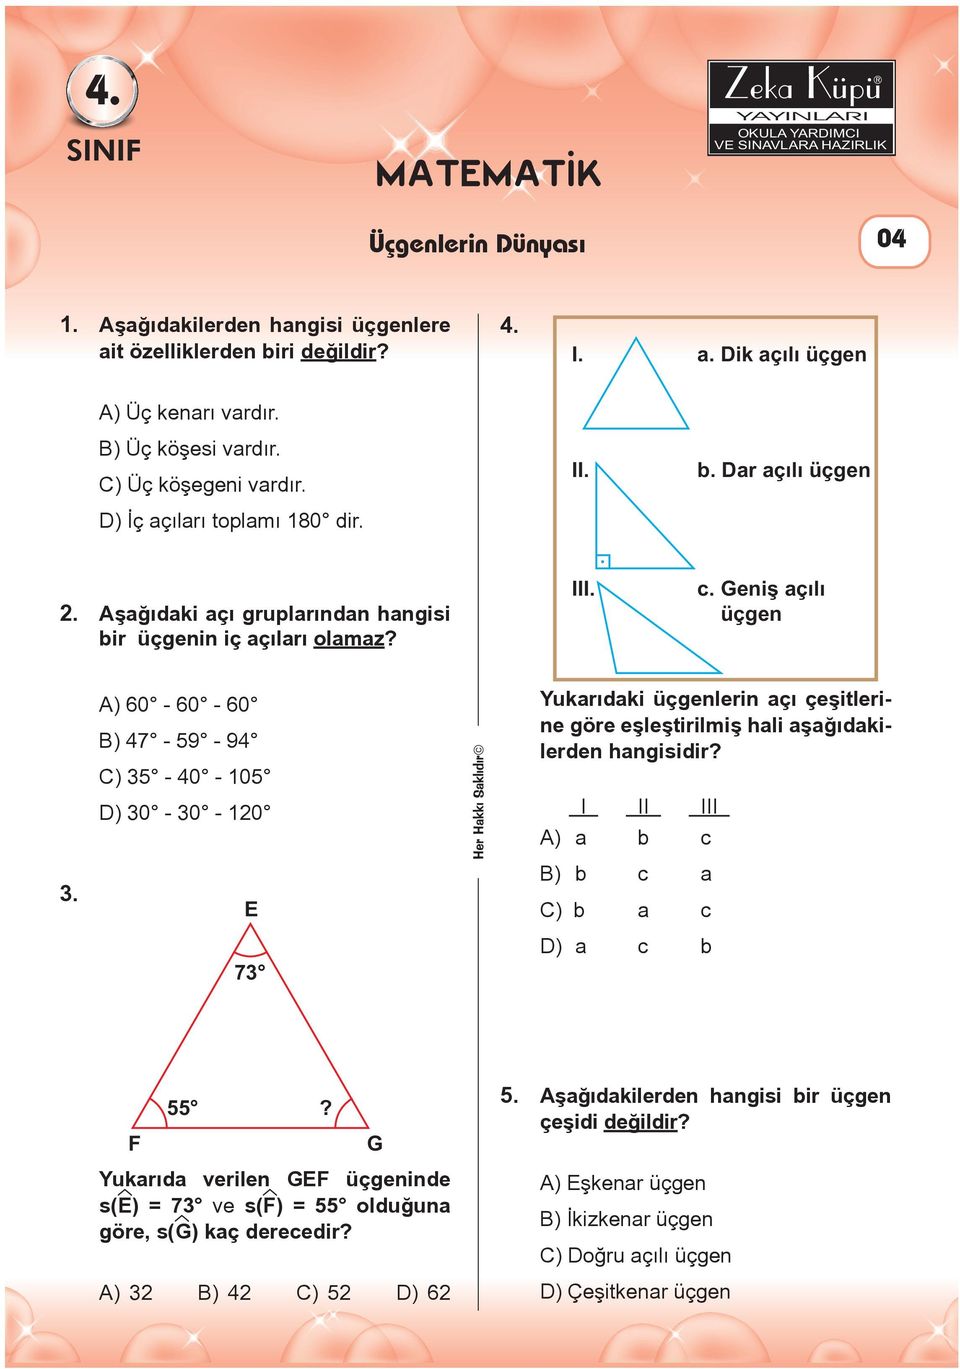 A) 60-60 - 60 B) 47-59 - 94 C) 35-40 - 105 ) 30-30 - 120 73 Yukarıdaki üçgenlerin açı çeşitlerine göre eşleştirilmiş hali aşağıdakilerden hangisidir? I II III A) a b c B) b c a C) b a c ) a c b F 55?